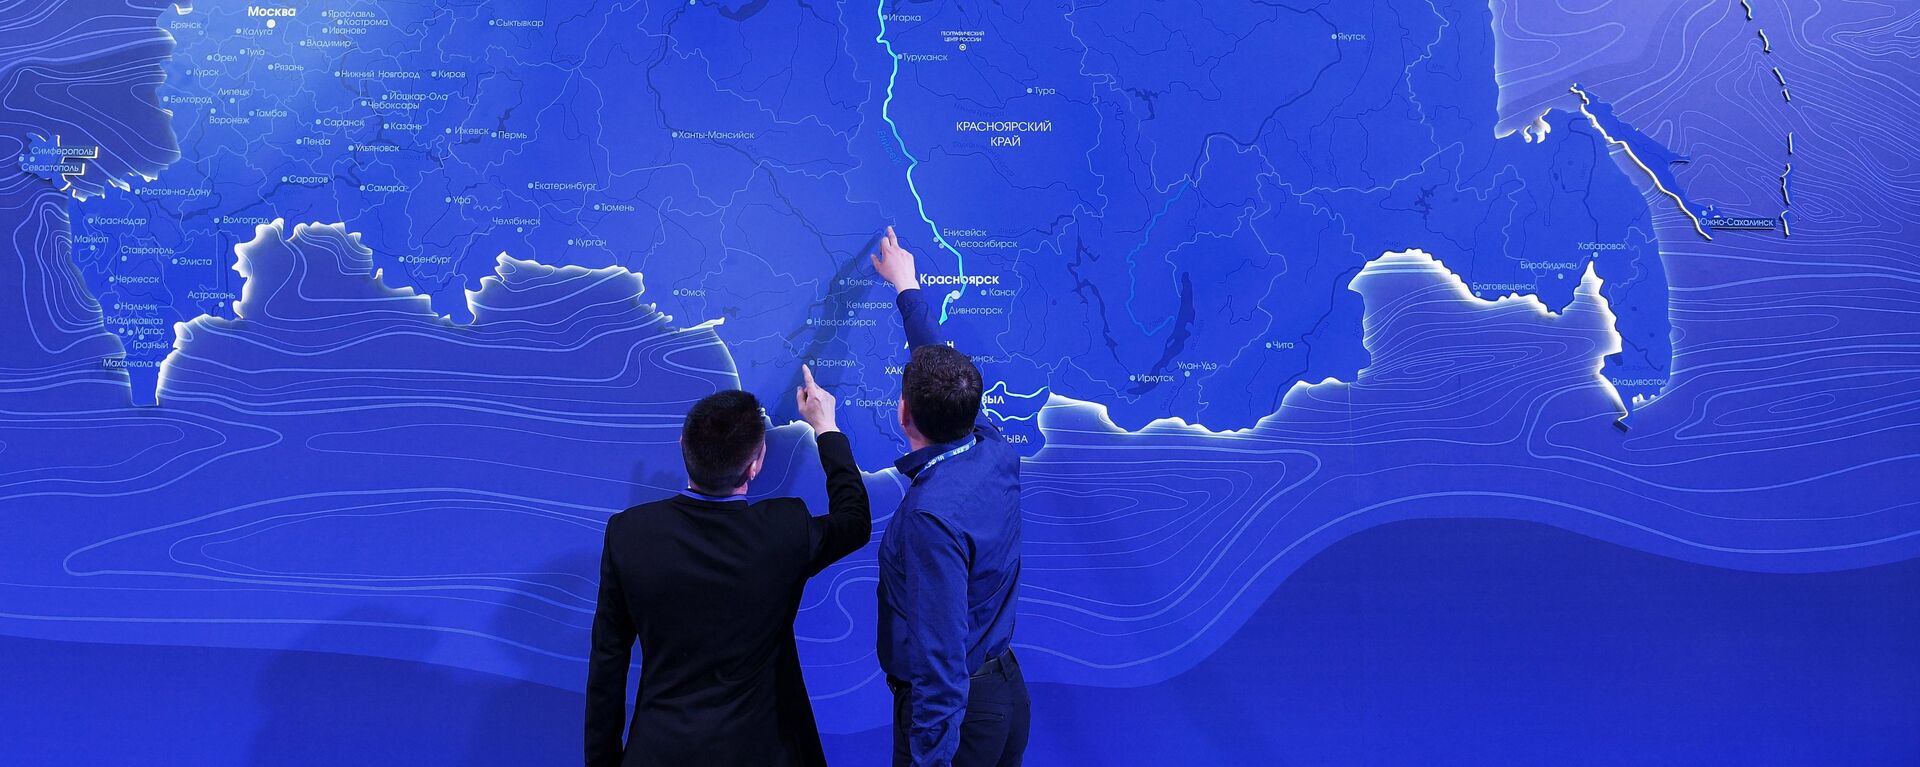 Hombres observando el mapa de Rusia en el Foro Económico de Krasnoyarsk (archivo) - Sputnik Mundo, 1920, 23.10.2020